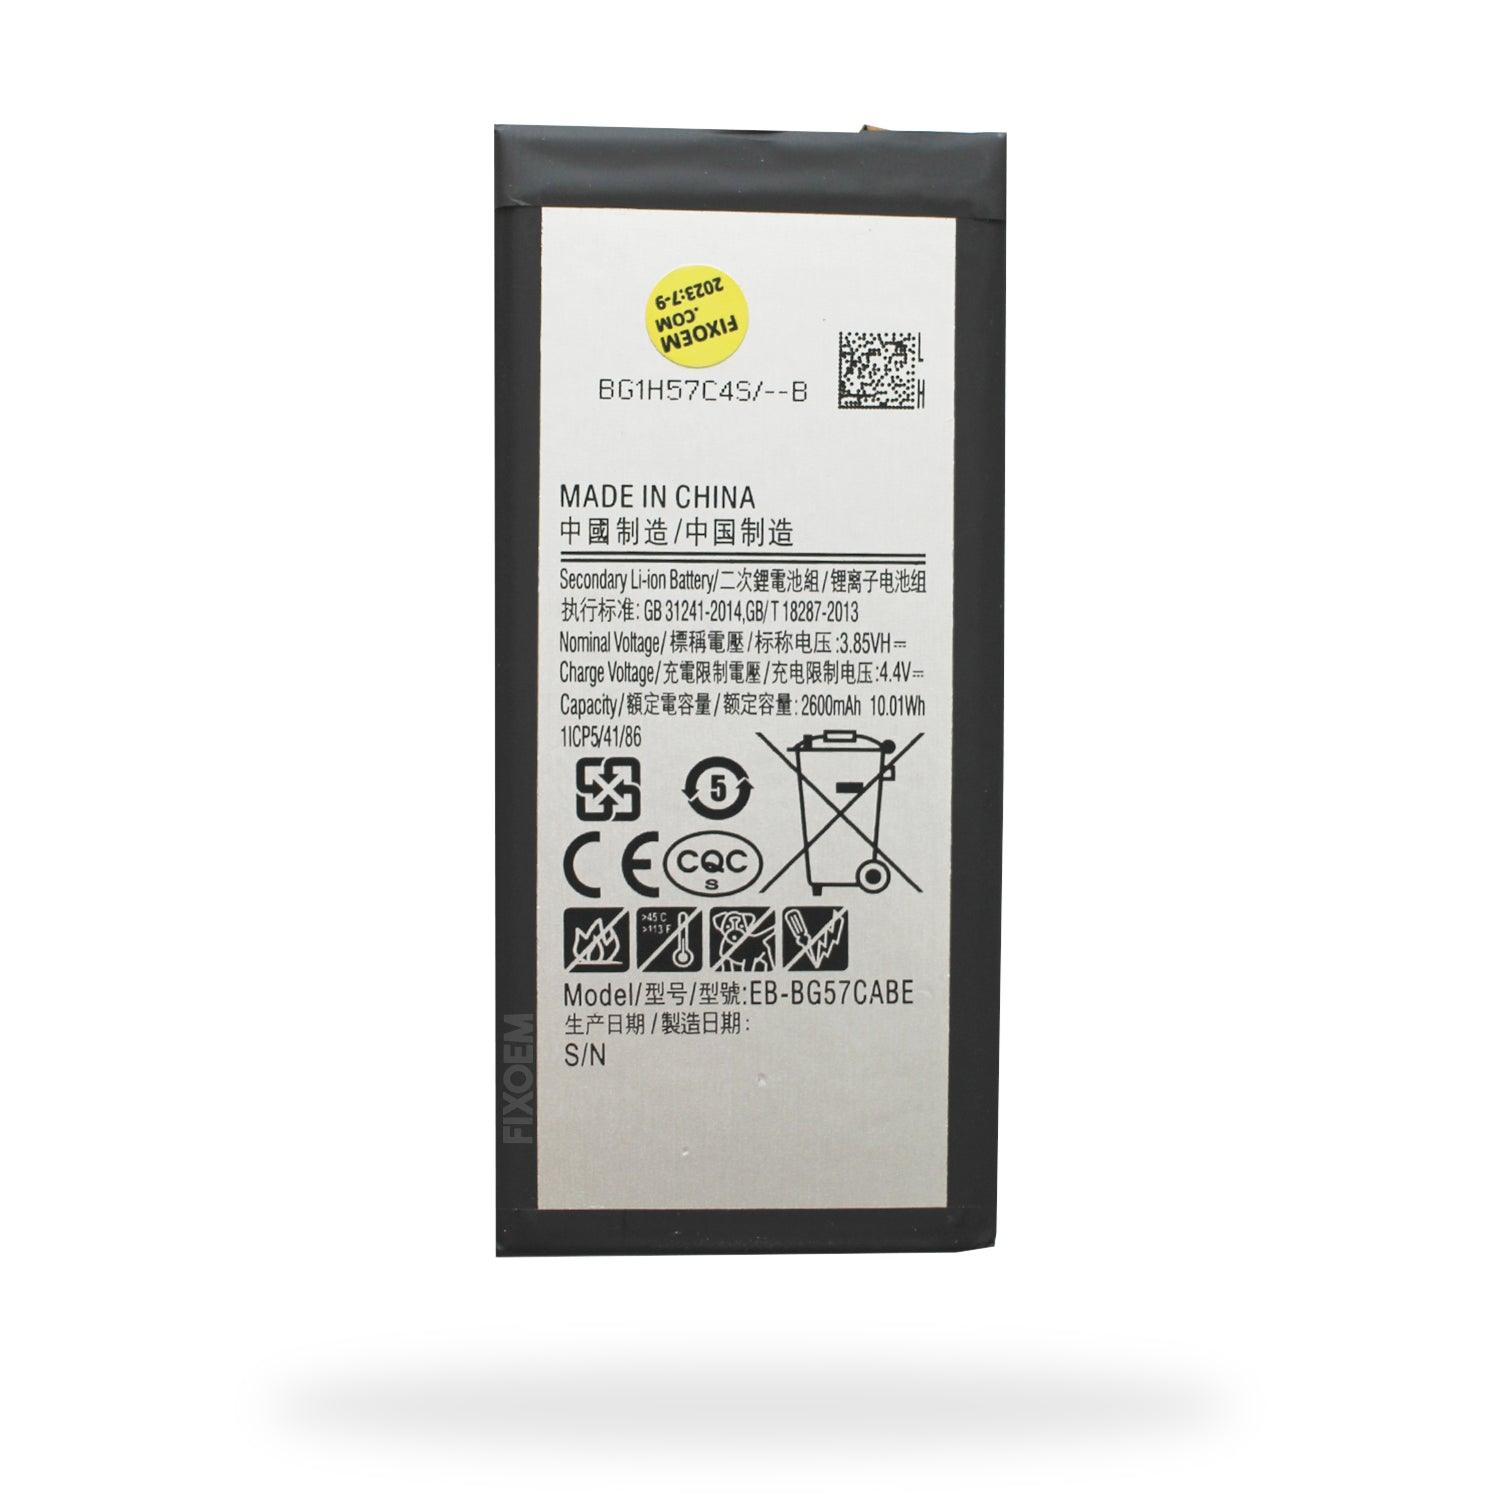 Bateria Samsung J5 Prime Sm-G570M Eb-Bg570Abe a solo $ 120.00 Refaccion y puestos celulares, refurbish y microelectronica.- FixOEM